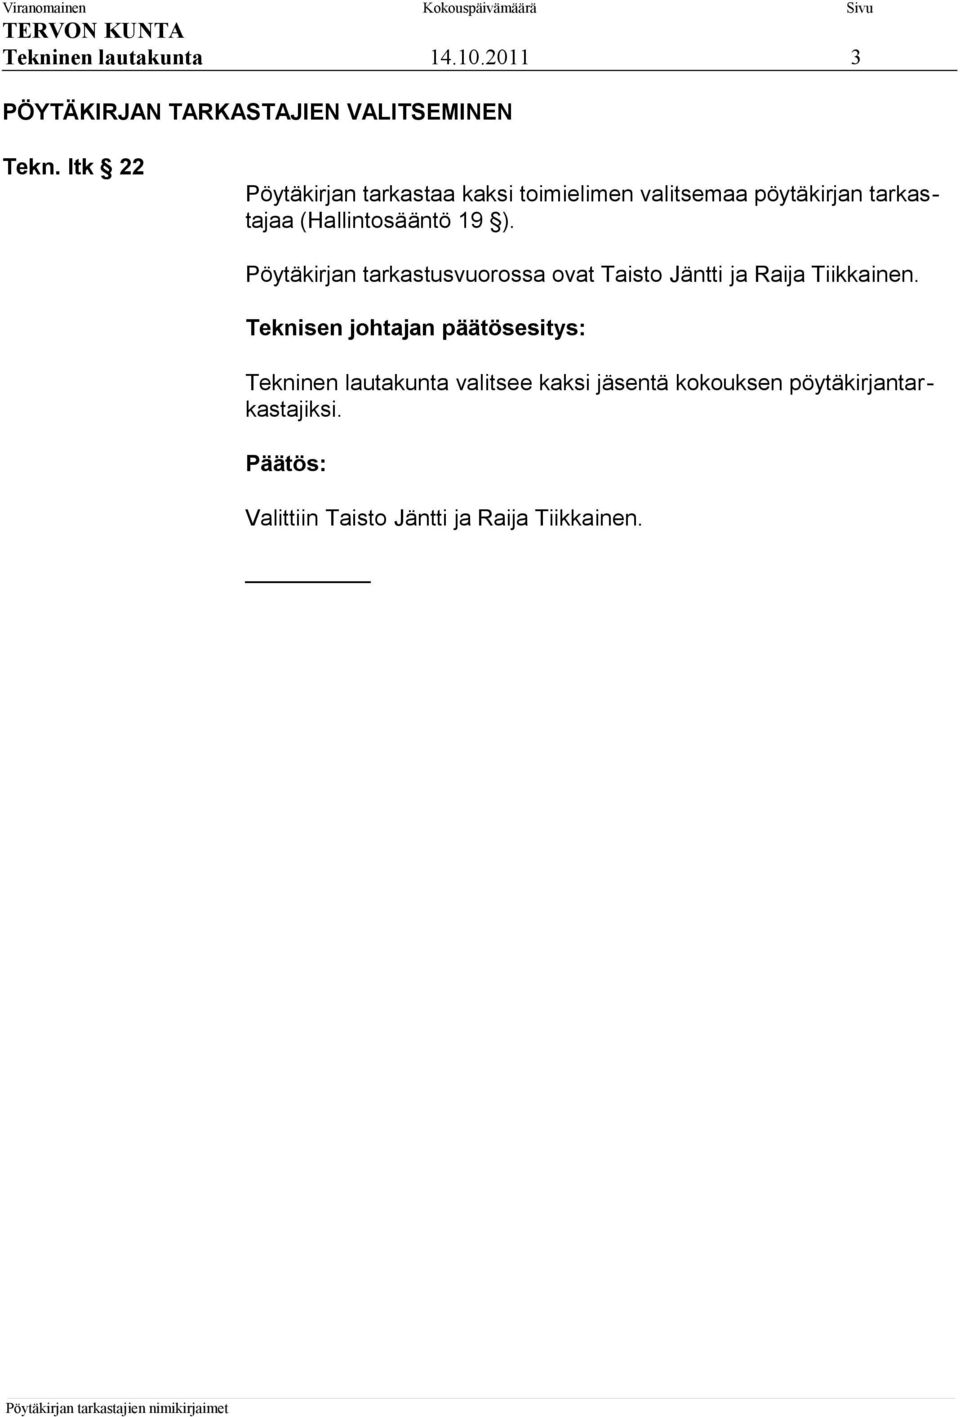 (Hallintosääntö 19 ). Pöytäkirjan tarkastusvuorossa ovat Taisto Jäntti ja Raija Tiikkainen.